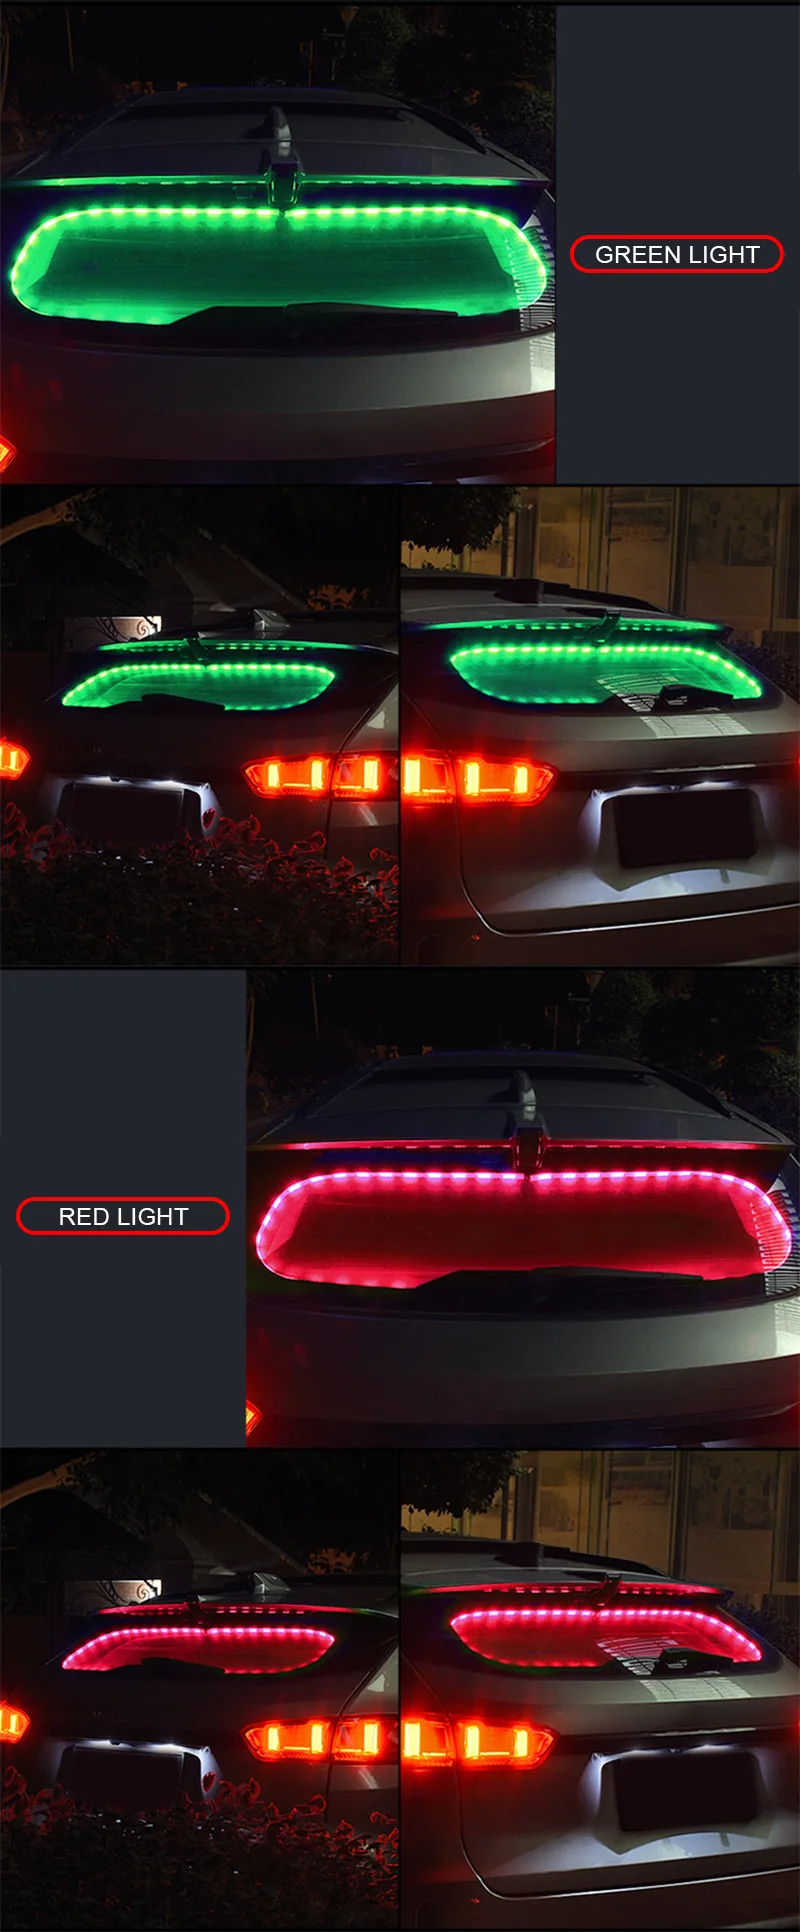 12 В светодиодный автомобильный атмосферный свет RGB окна автомобиля Гибкая светодиодная подсветка автомобилей Интерьер окружающие сигнальные лампы декоративная лампа